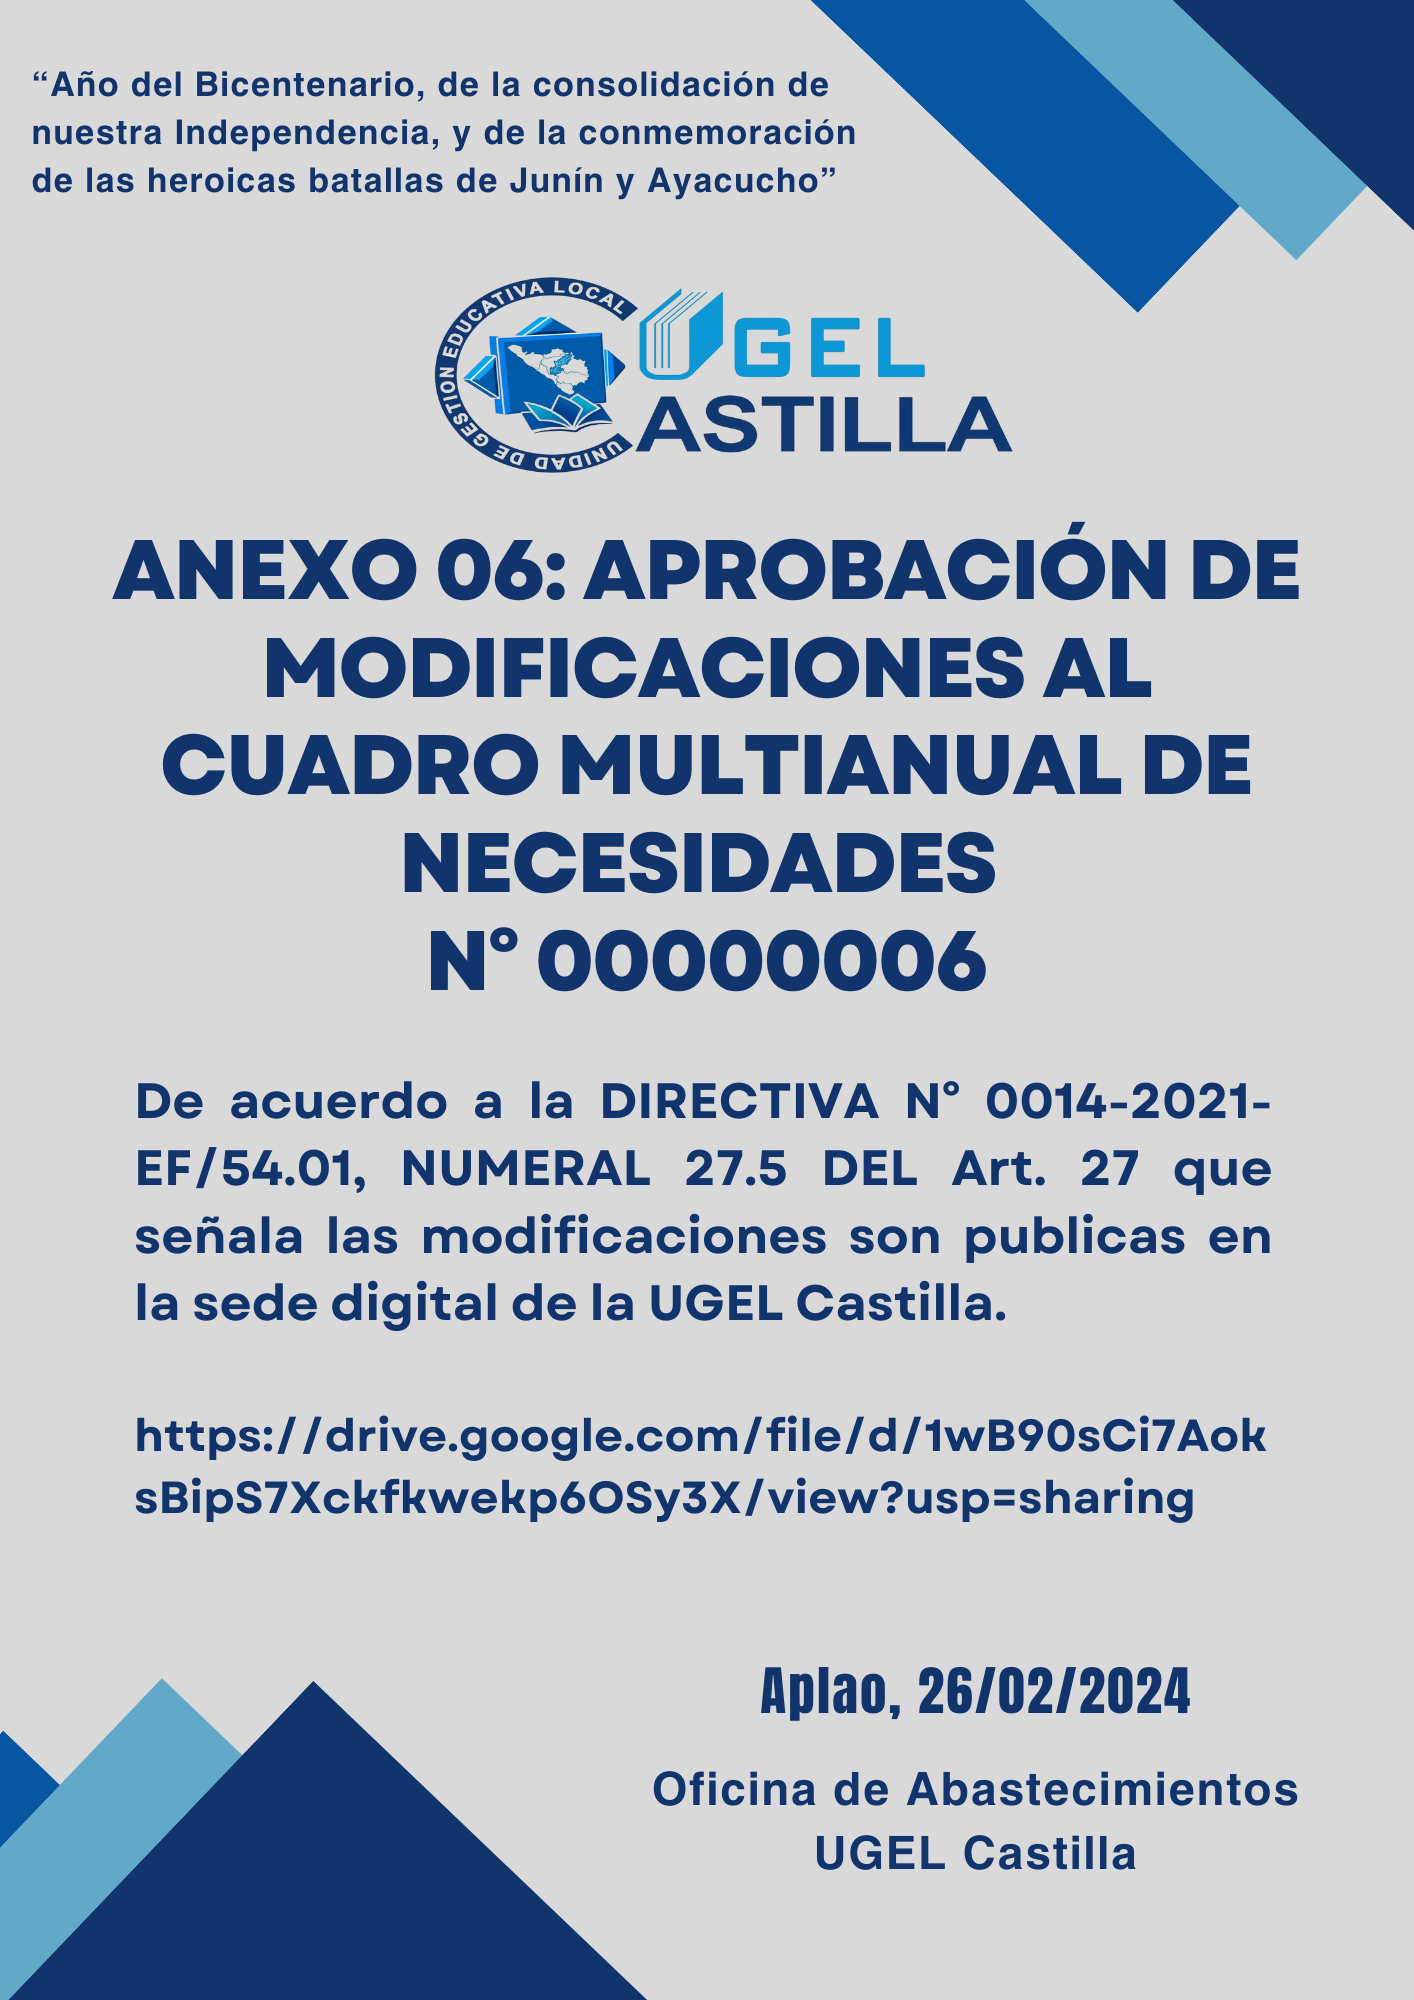 Vista preliminar de documento ANEXO 06 APROBACIÓN DE MODIFICACIONES AL CUADRO MULTIANUAL DE NECESIDADES N° 00000006 UGEL Castilla